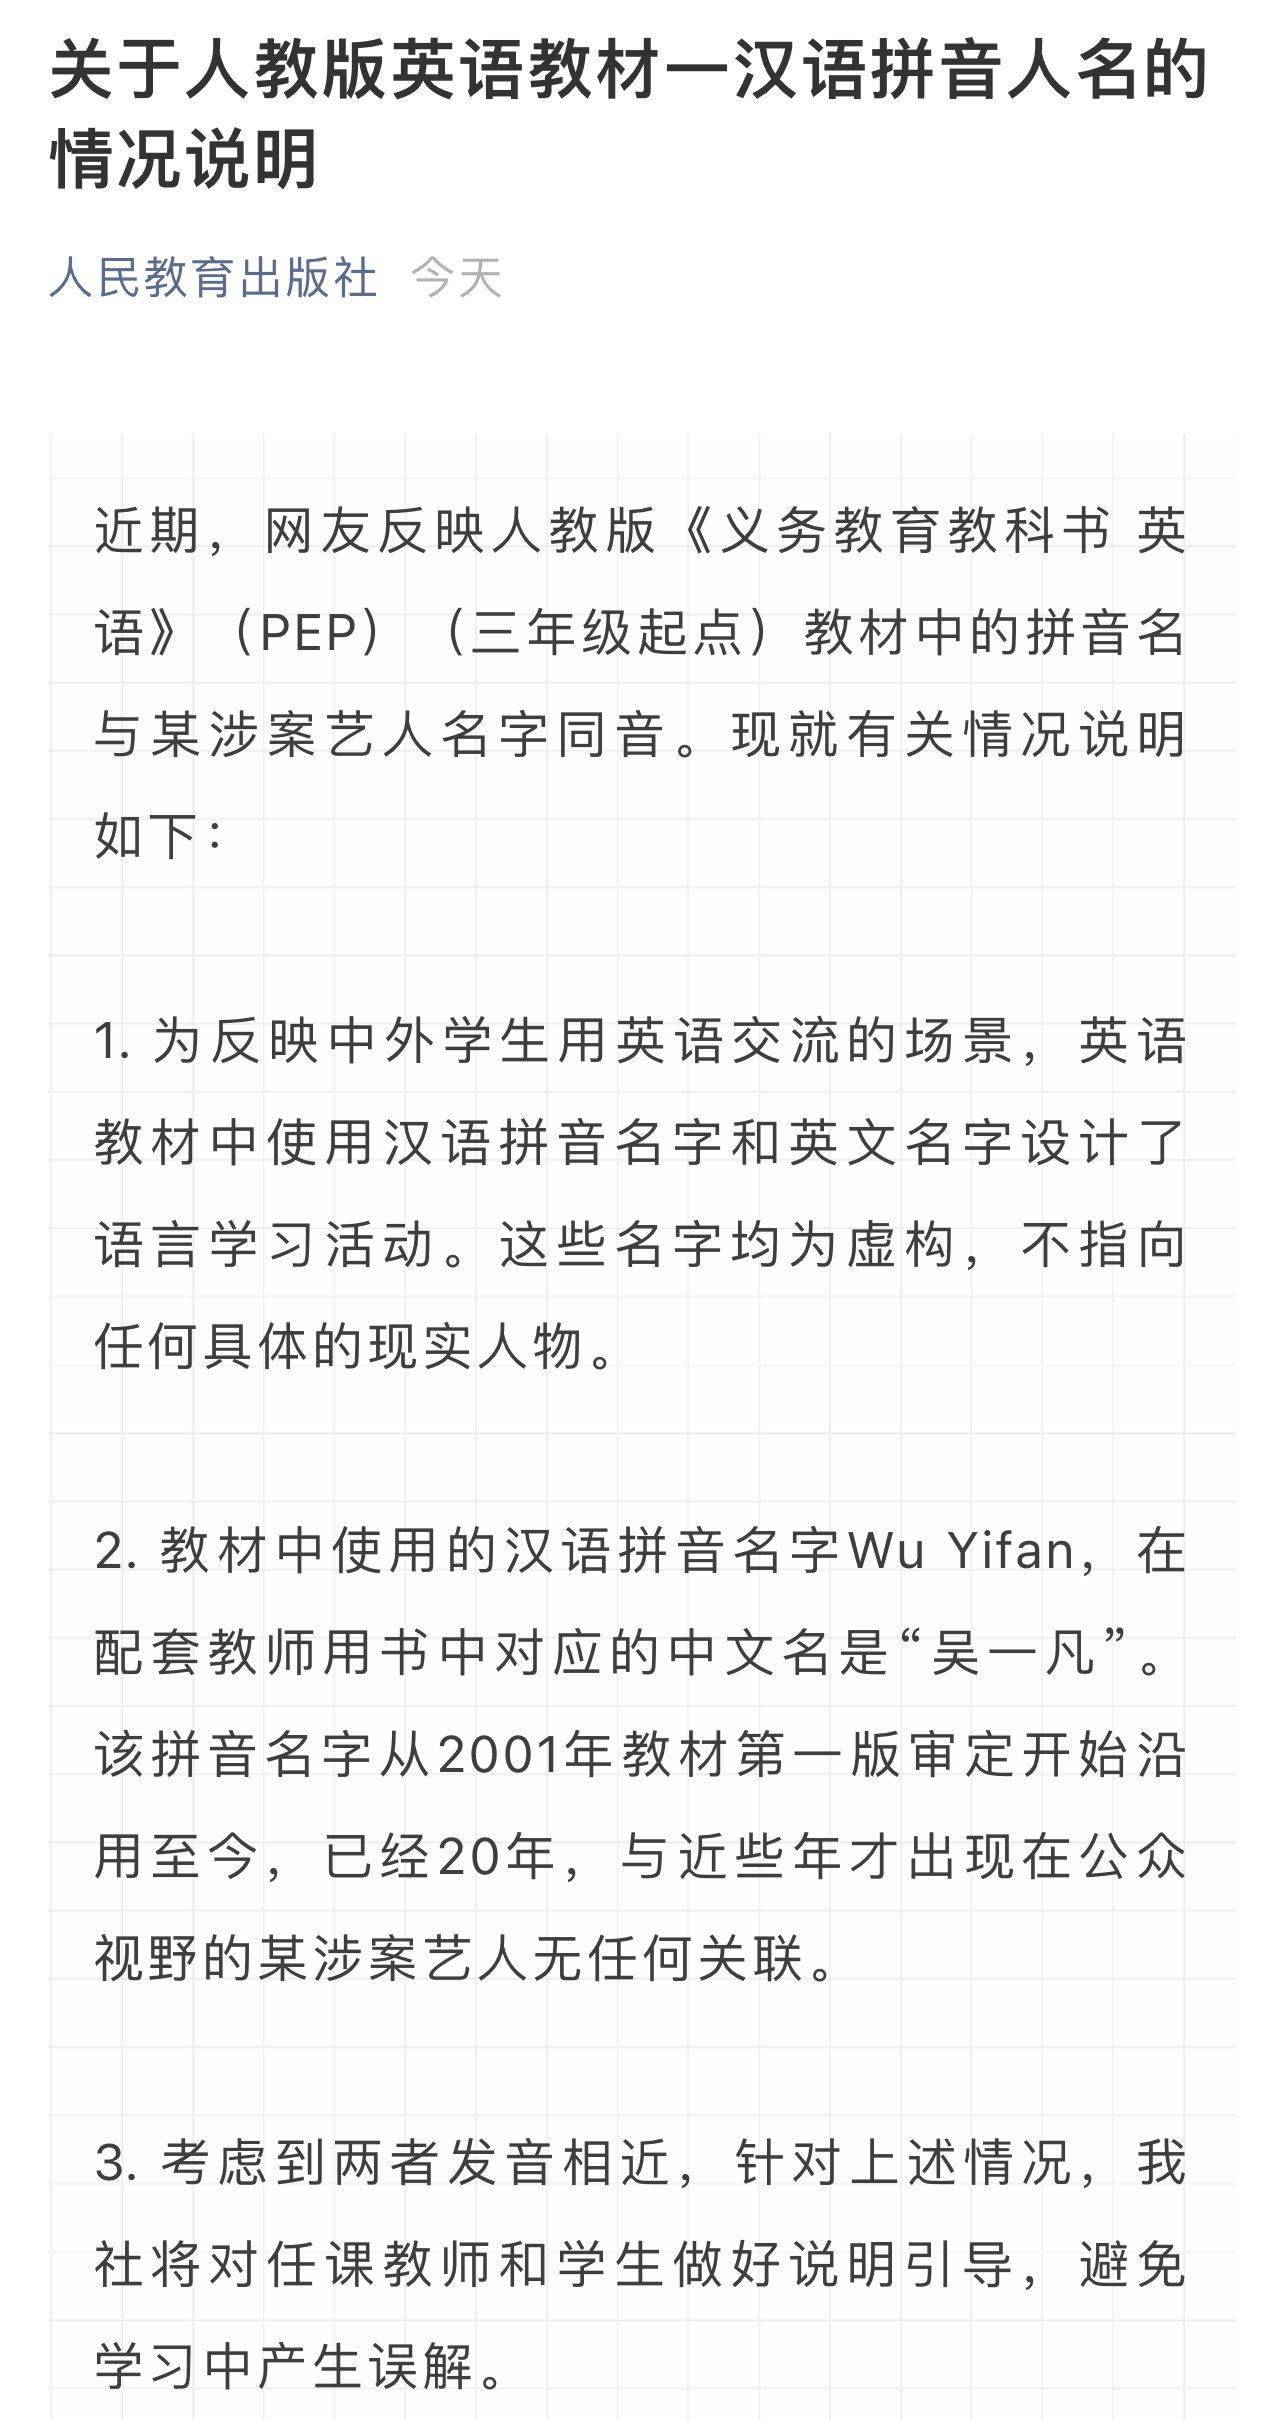 人教社回应英语教材出现 Wu Yifan 与涉案艺人无关 名字